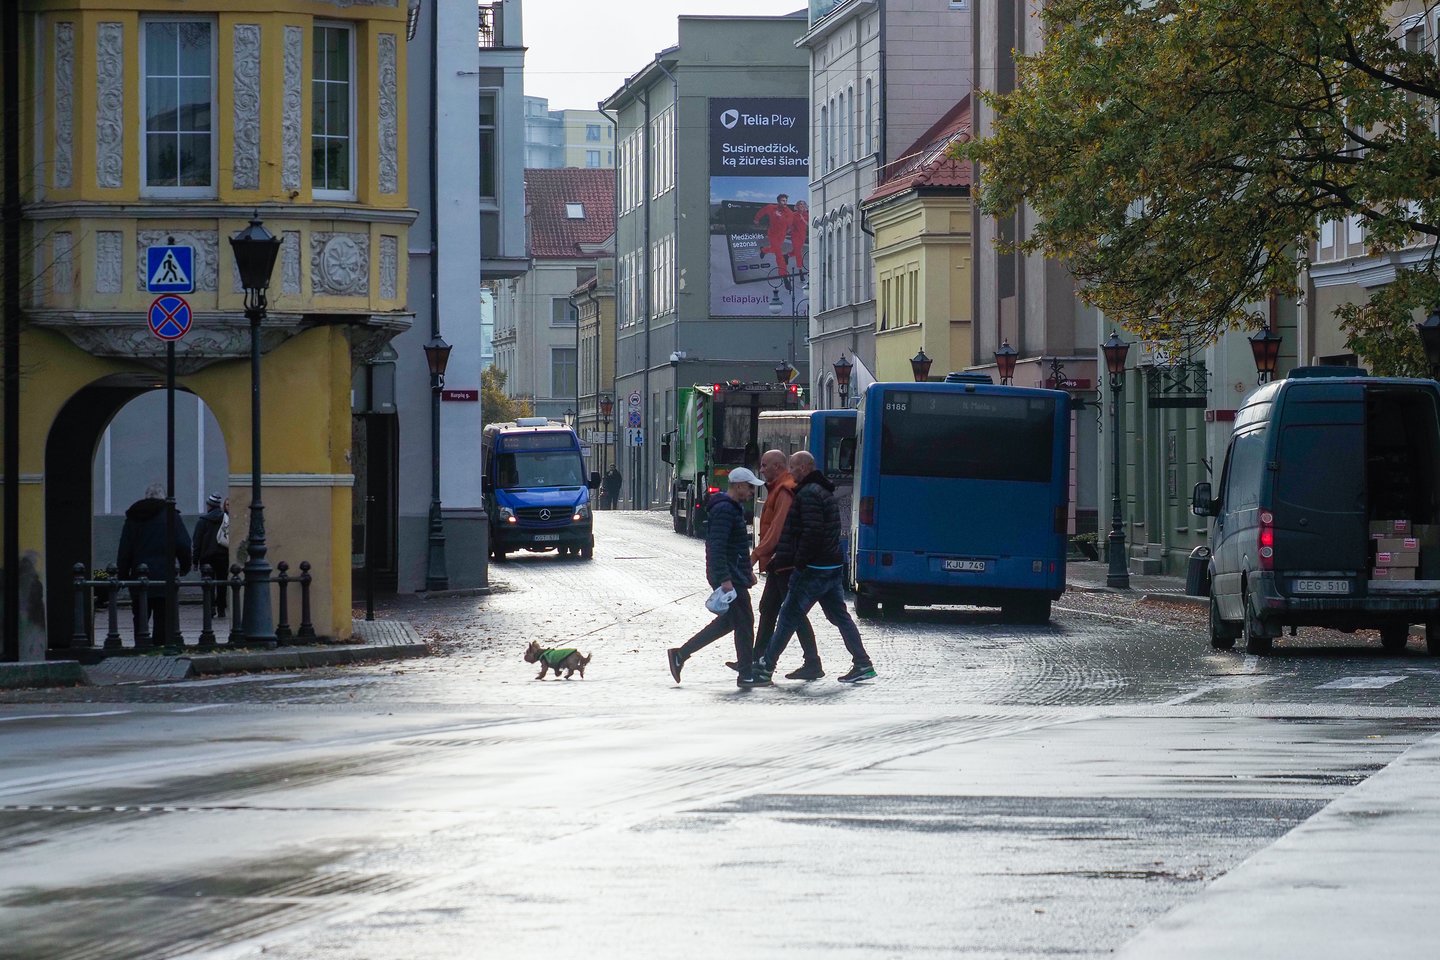 Klaipėdos miesto savivaldybė pranešė, kad nuo trečiadienio baigiamas šildymo sezonas.<br>V.Ščiavinsko nuotr.